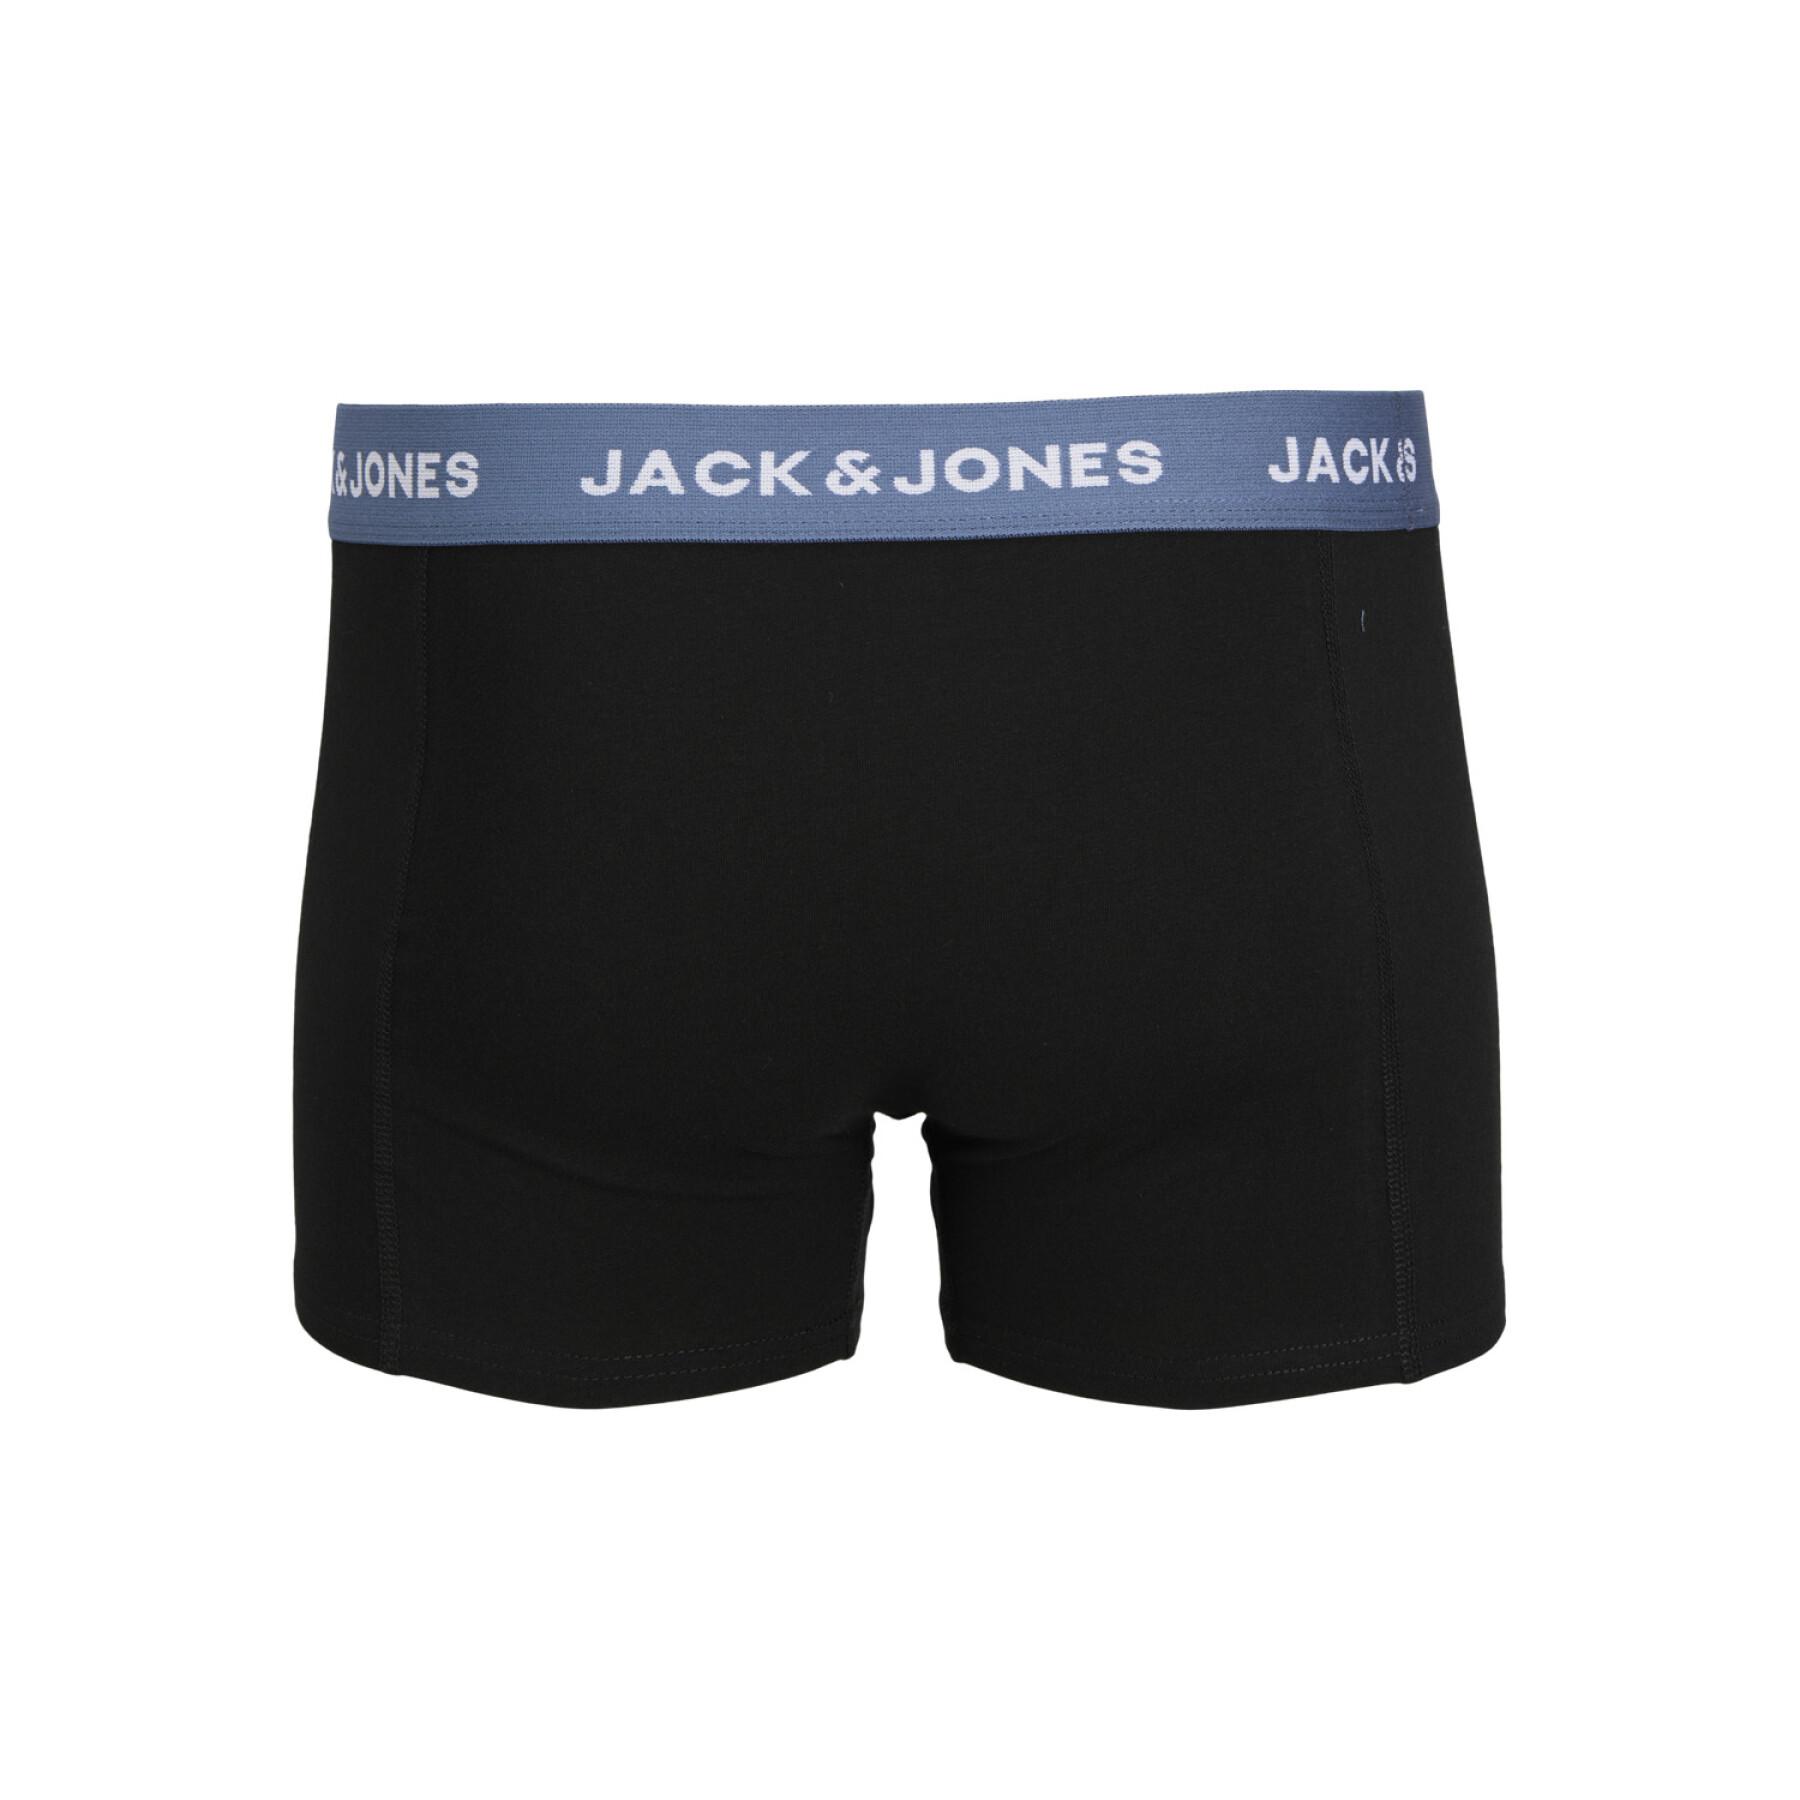 Set of 5 boxers Jack & Jones Solid